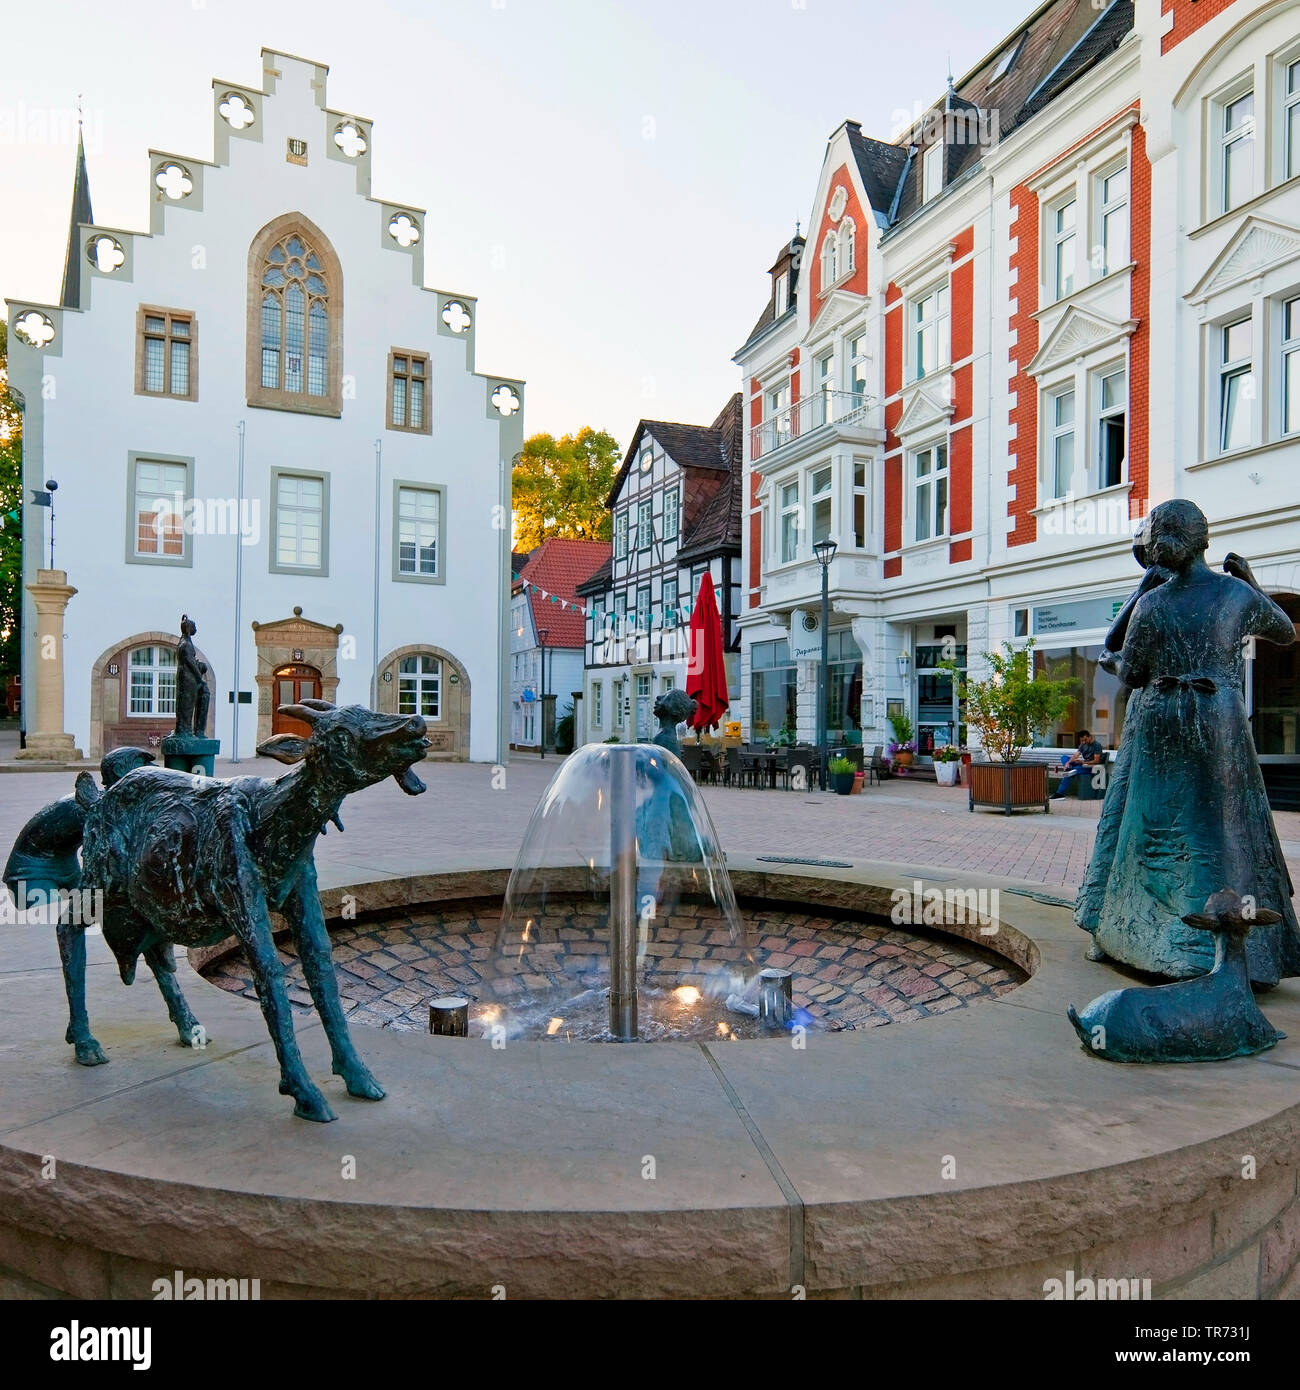 La vieille ville avec la place du marché et de la mairie, de l'Allemagne, en Rhénanie du Nord-Westphalie, à l'Est de la Westphalie, Brakel Banque D'Images